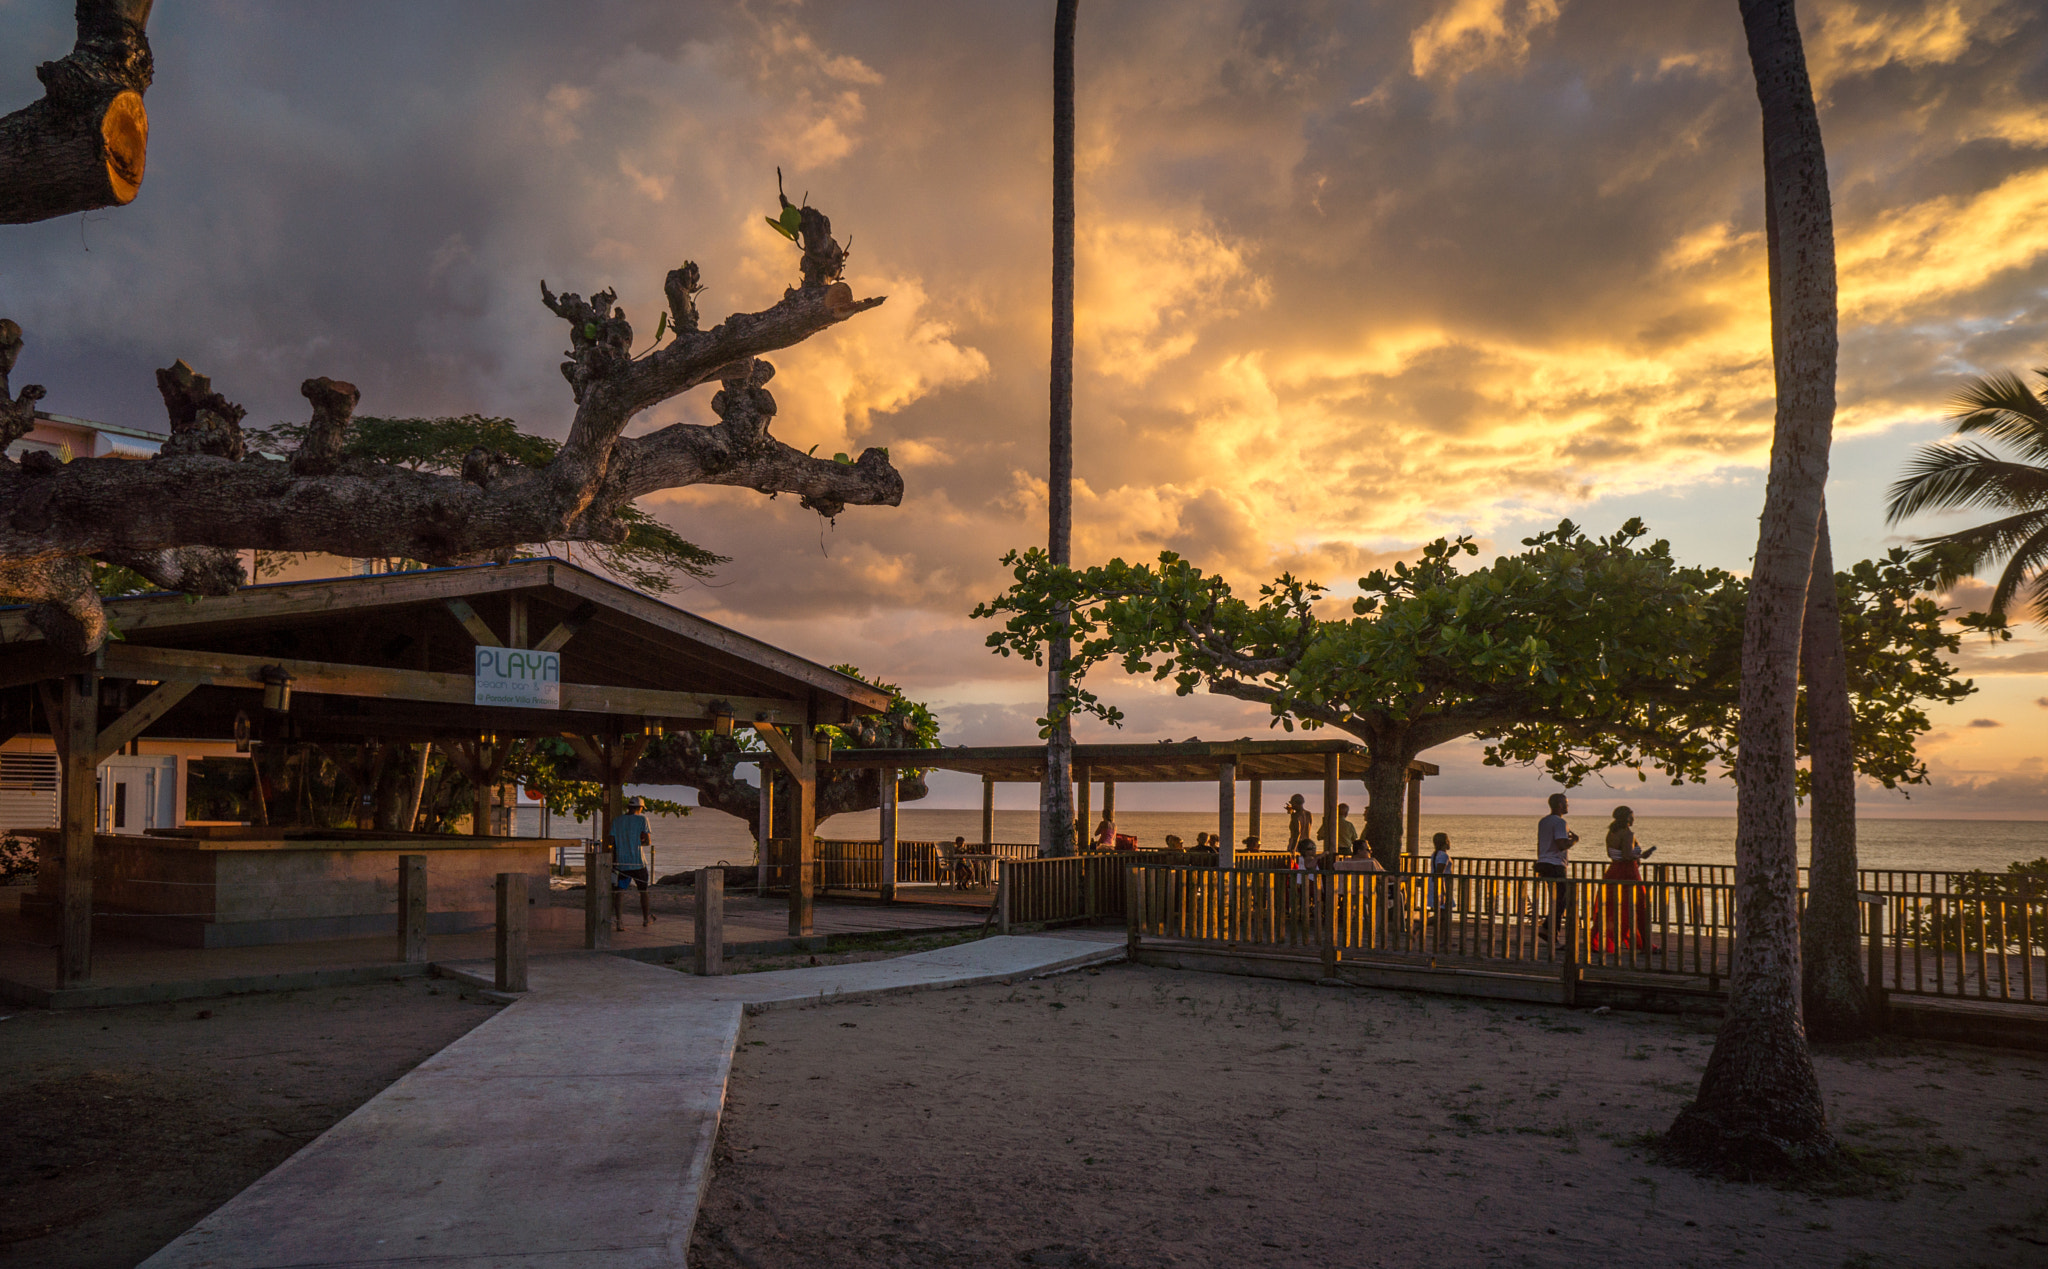 Sony Alpha NEX-7 sample photo. Sunset on the beach deck photography